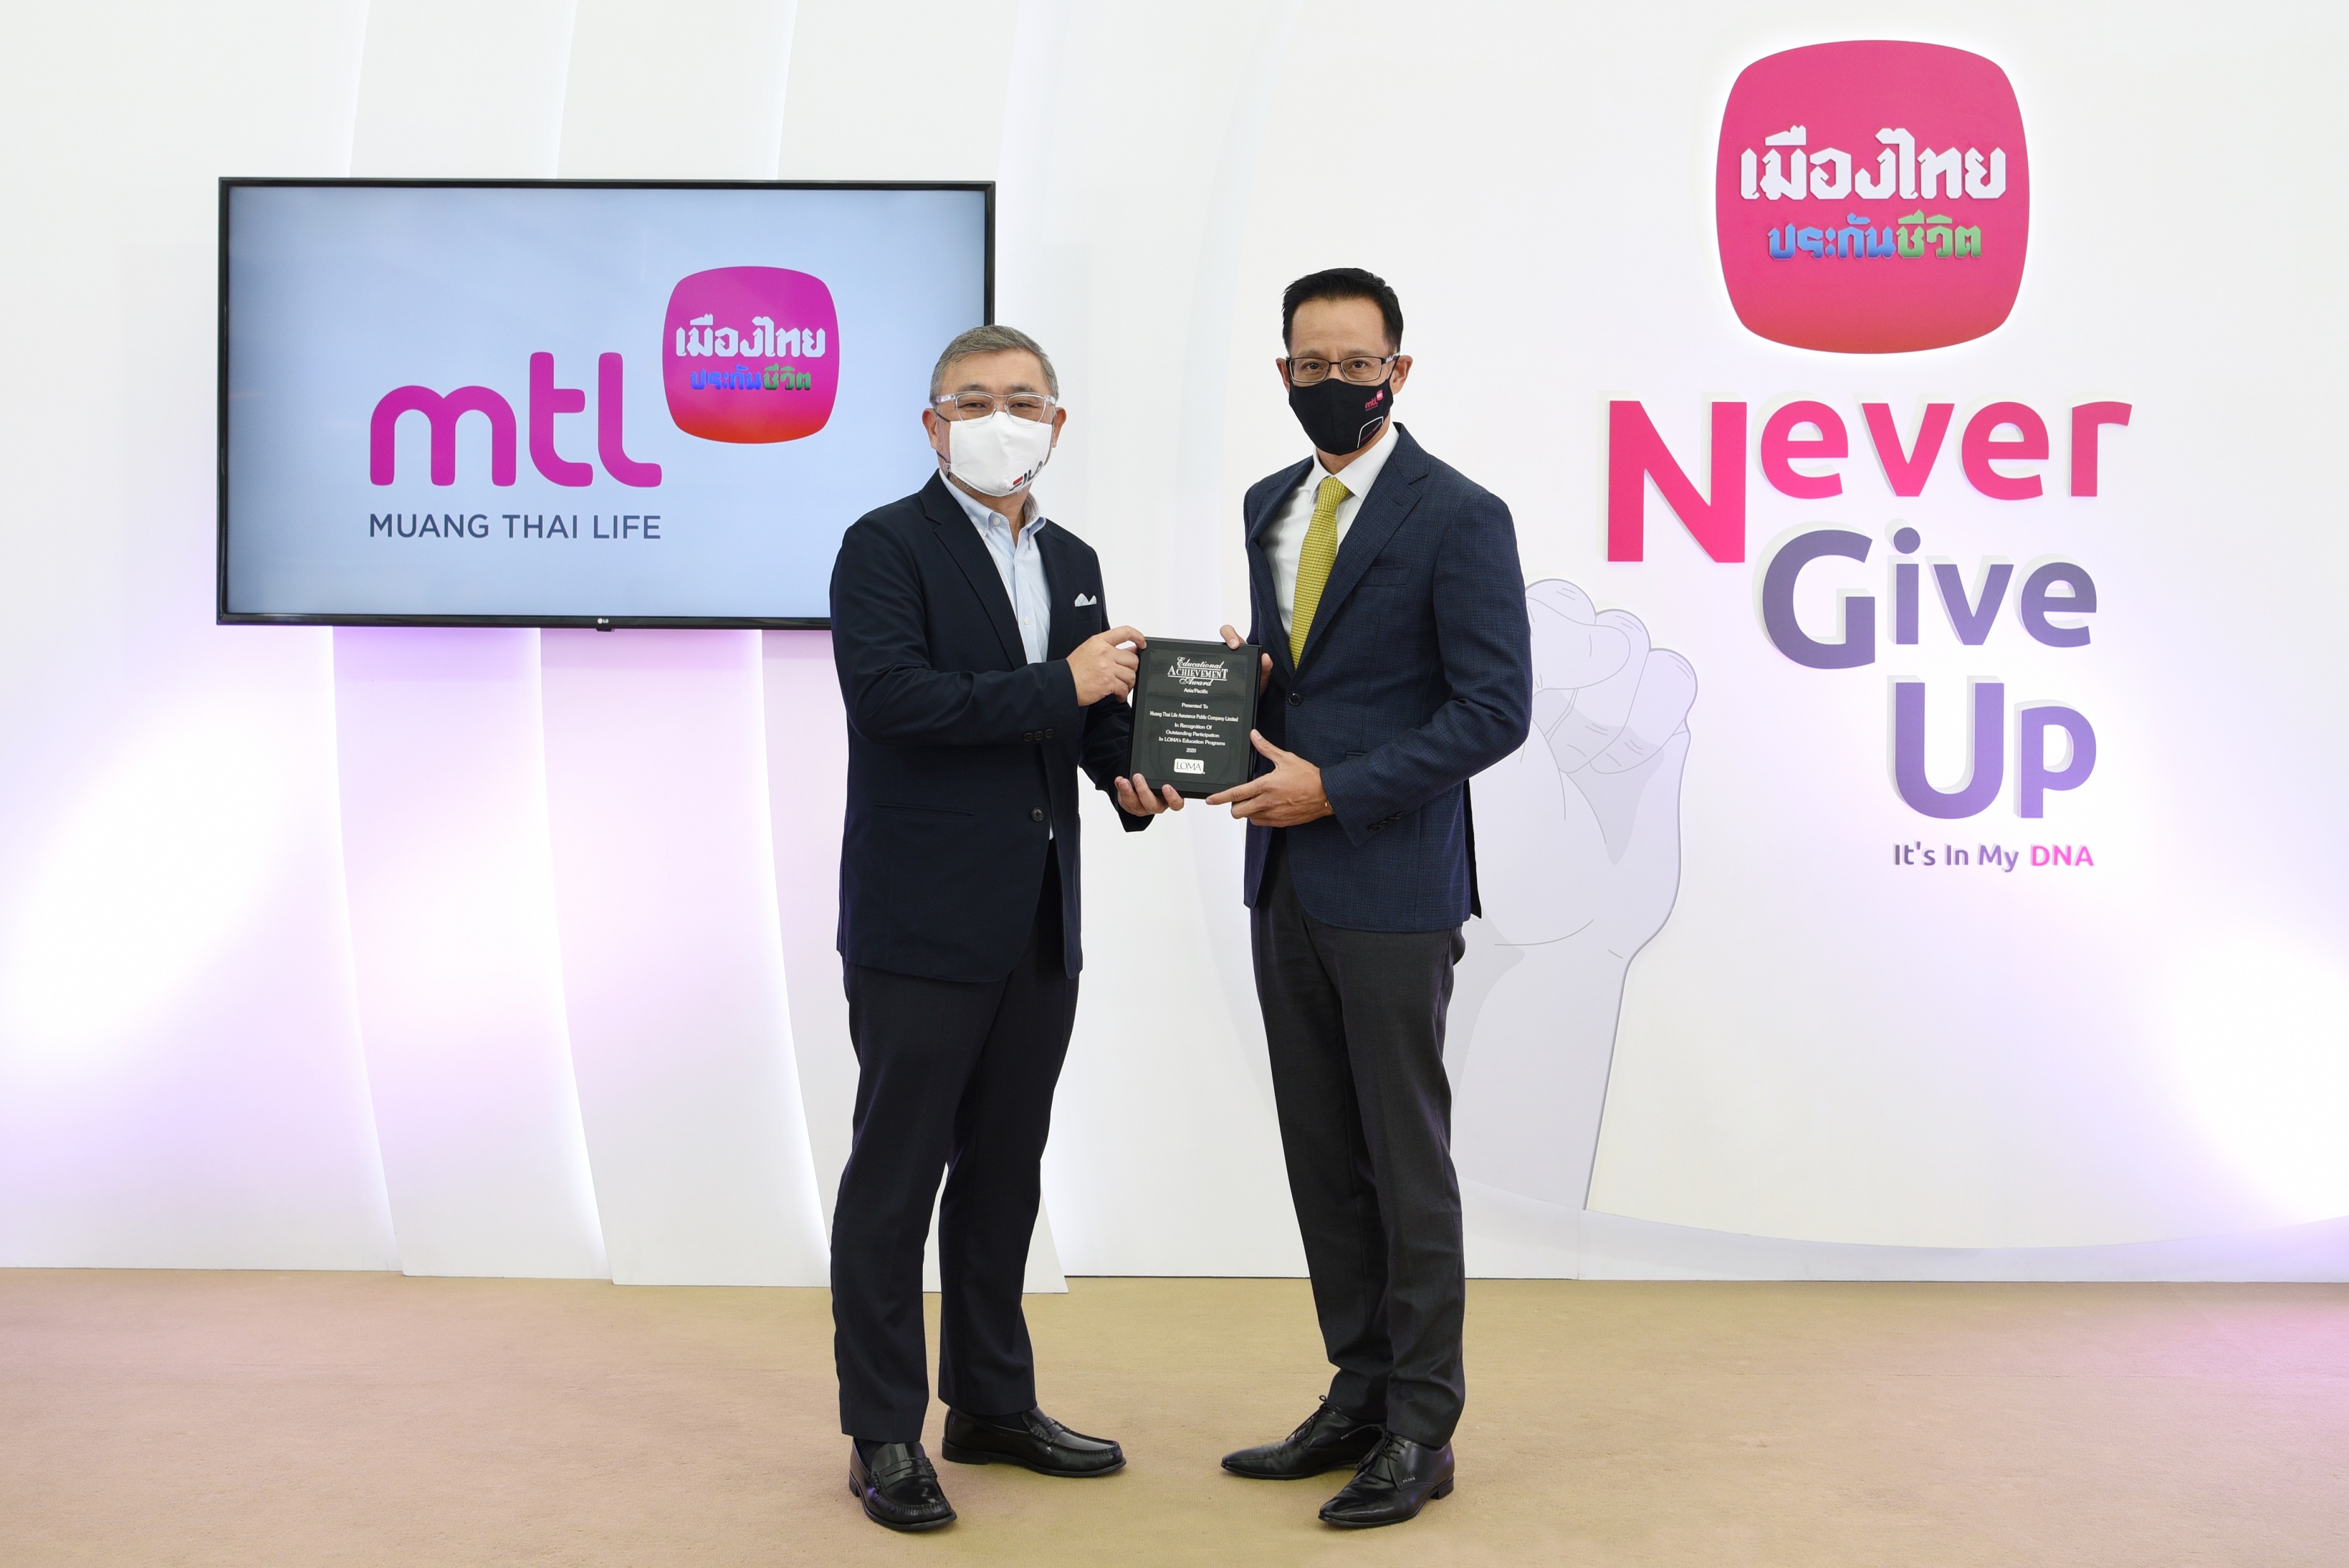 ภาพข่าว: เมืองไทยประกันชีวิต รับรางวัล Education Achievement Awards ปี 2020 ต่อเนื่องเป็นปีที่ 2 จากสถาบัน Limra Loma